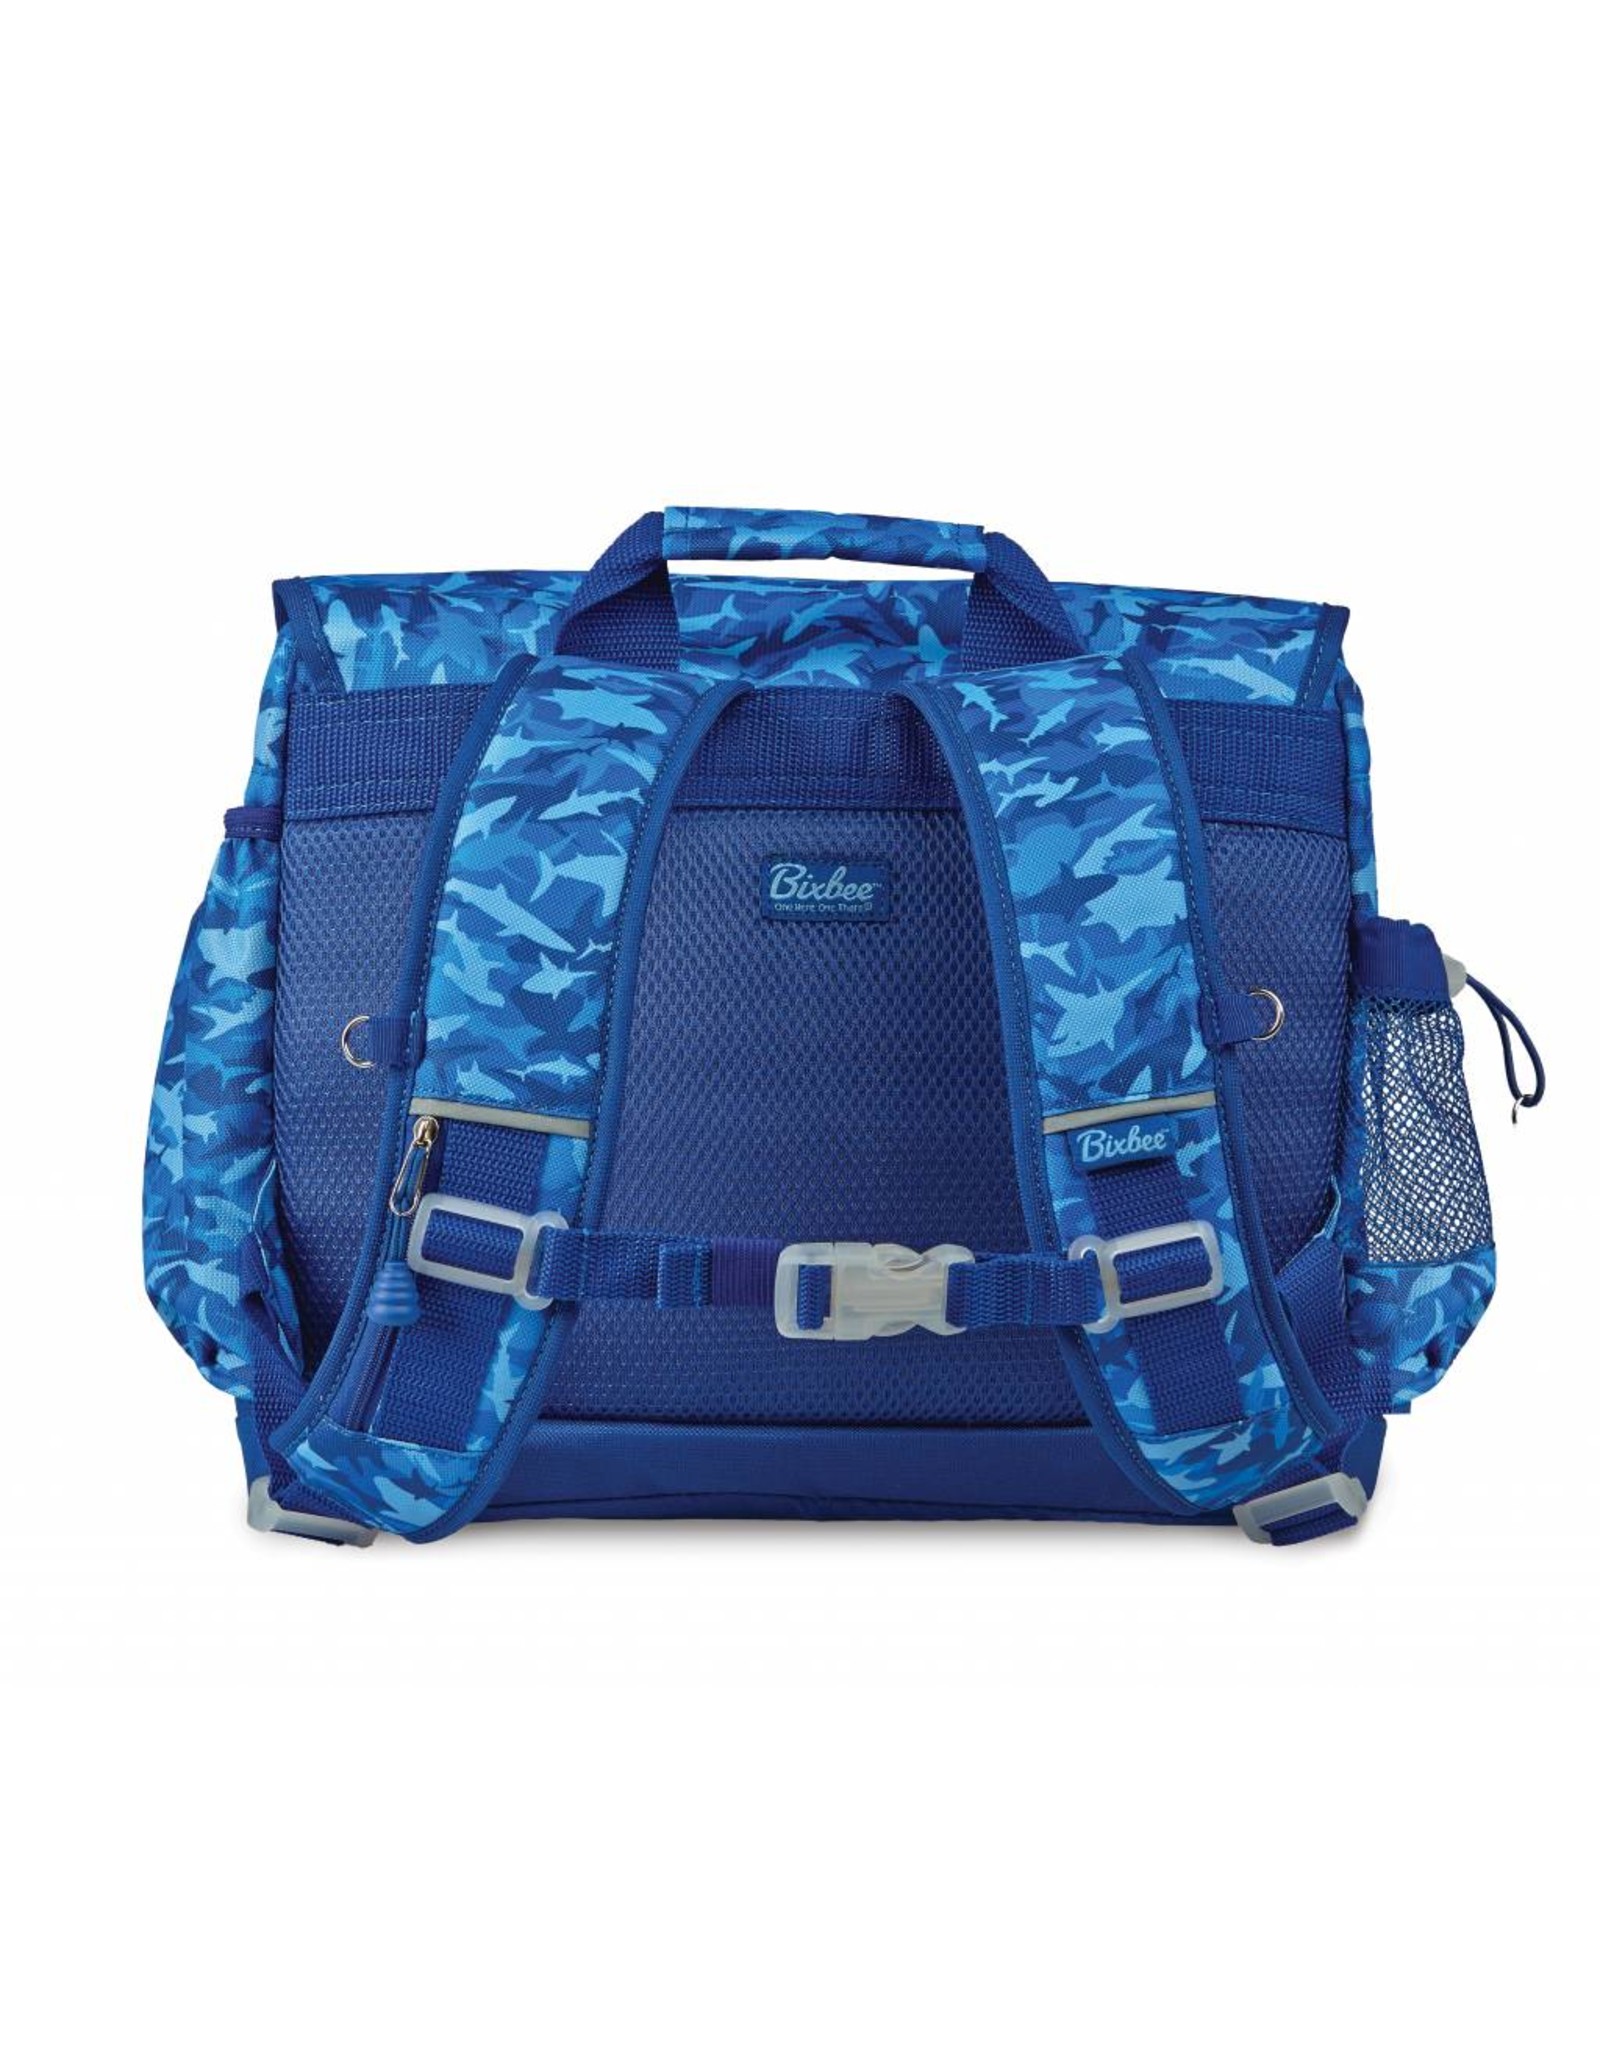 Bixbee Shark Camo Backpack (Medium)